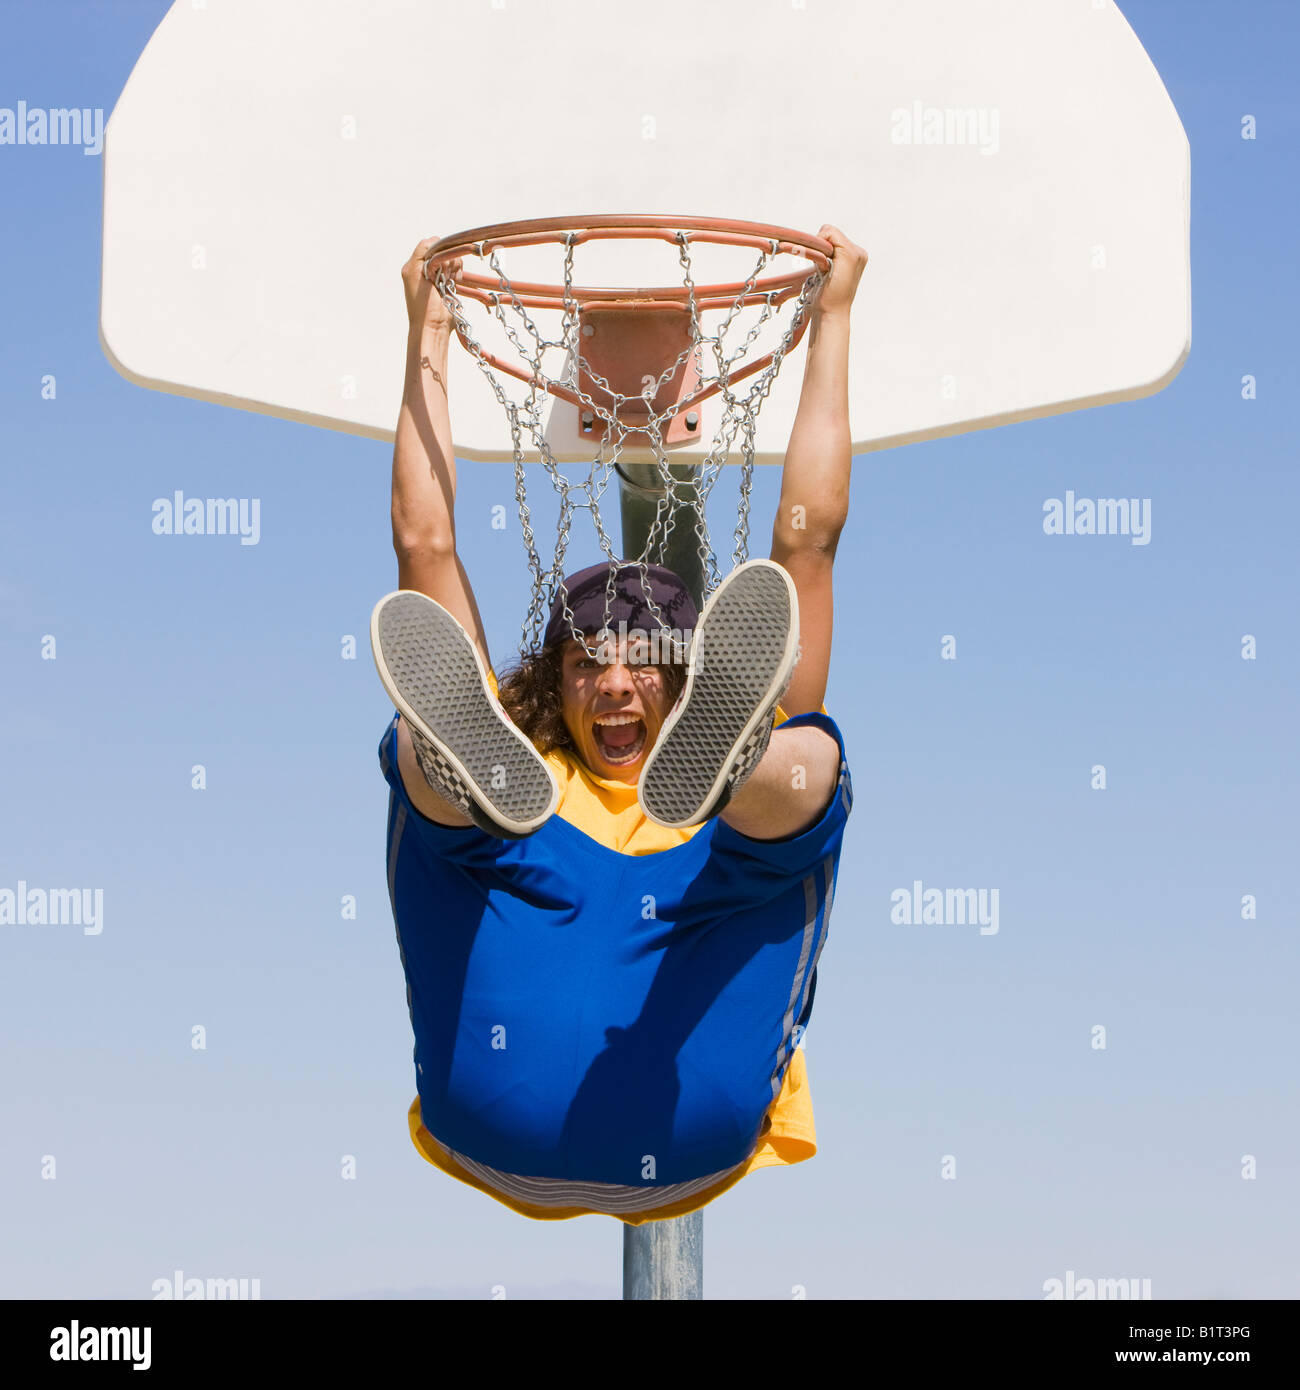 Un adolescent excité se bloque à partir d'un panier de basket-ball Banque D'Images